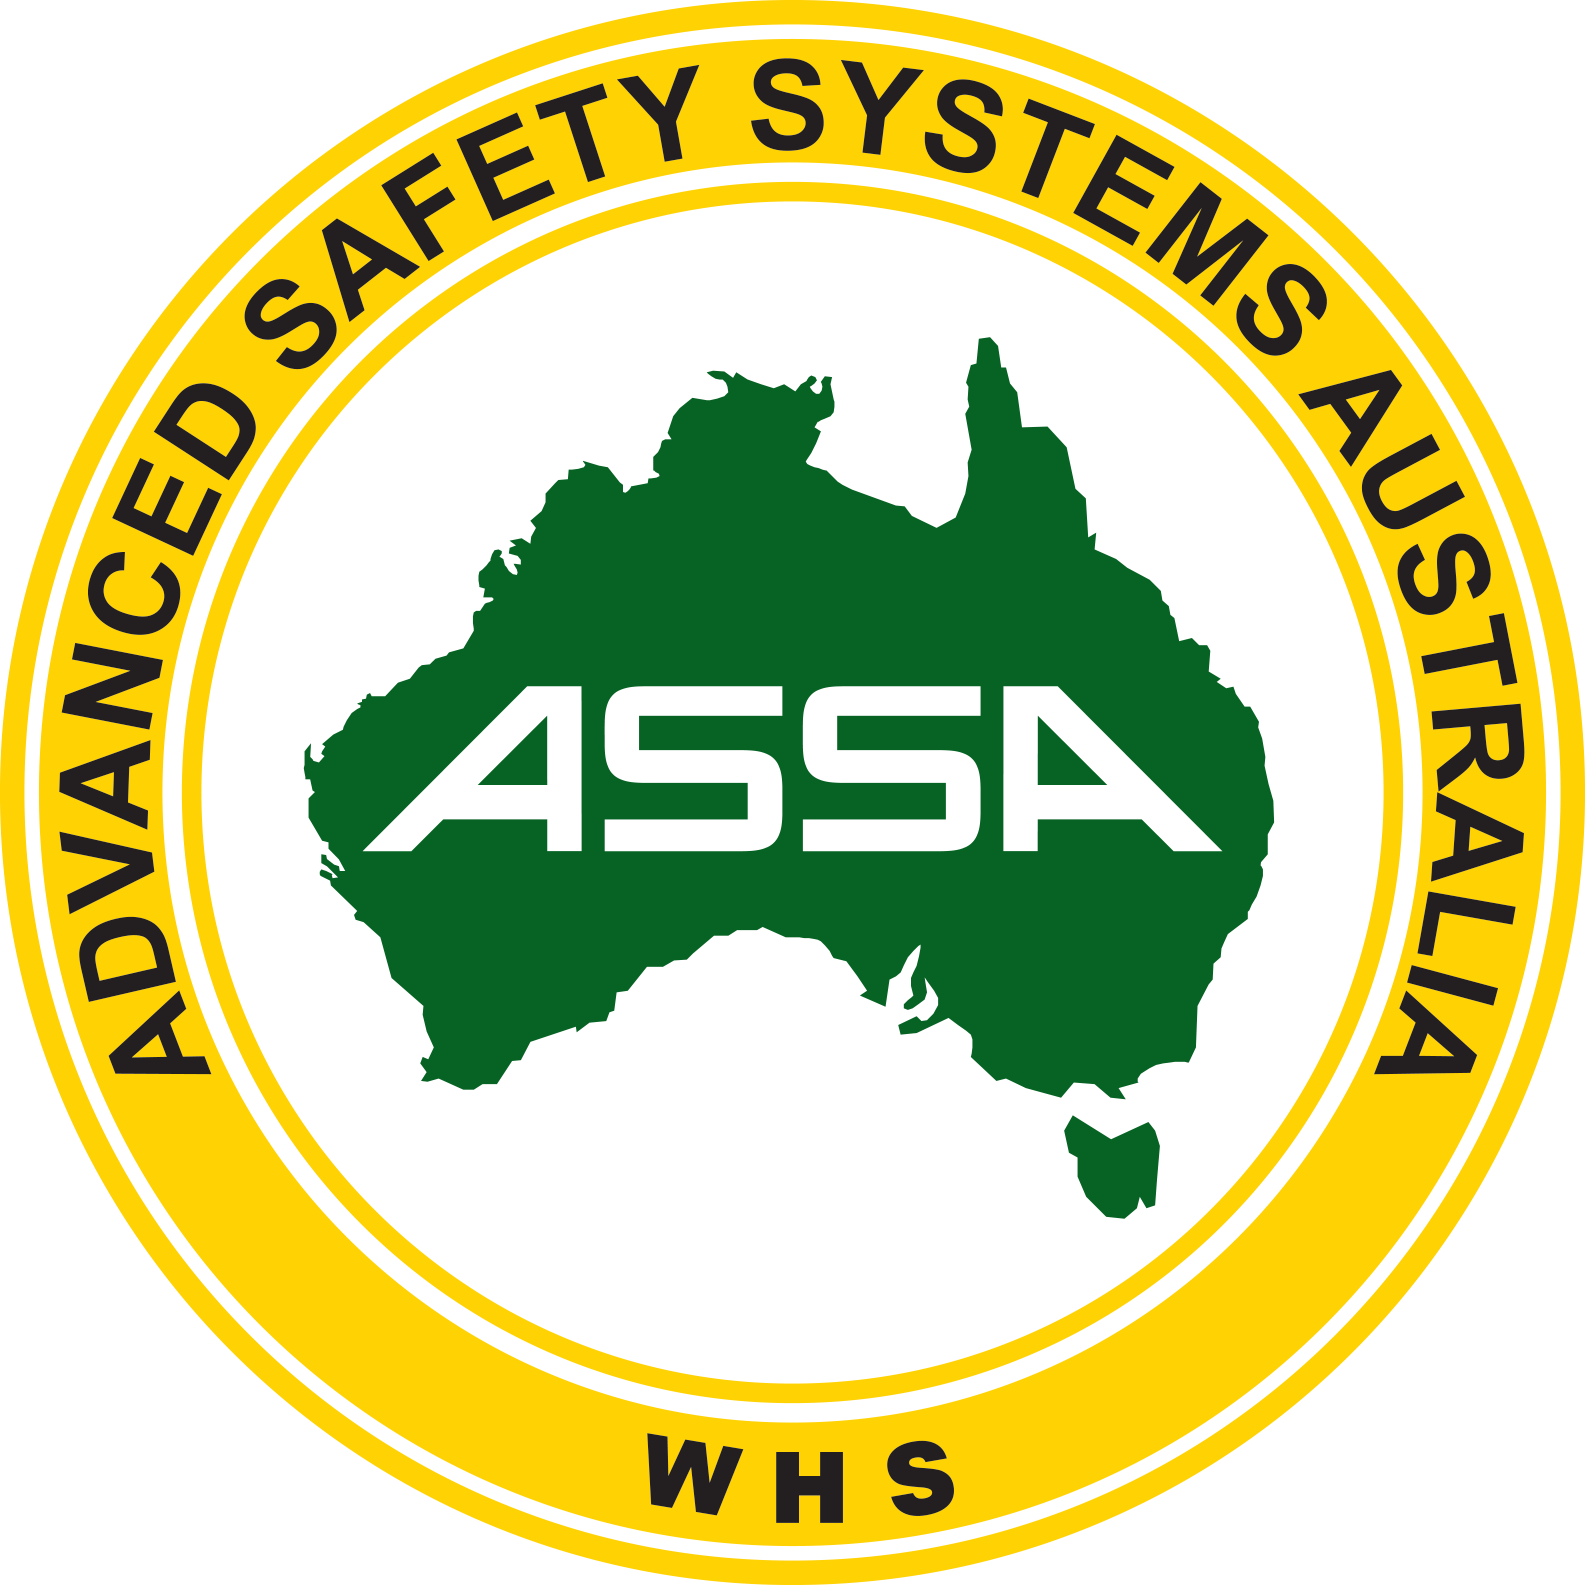 ASSA Logo